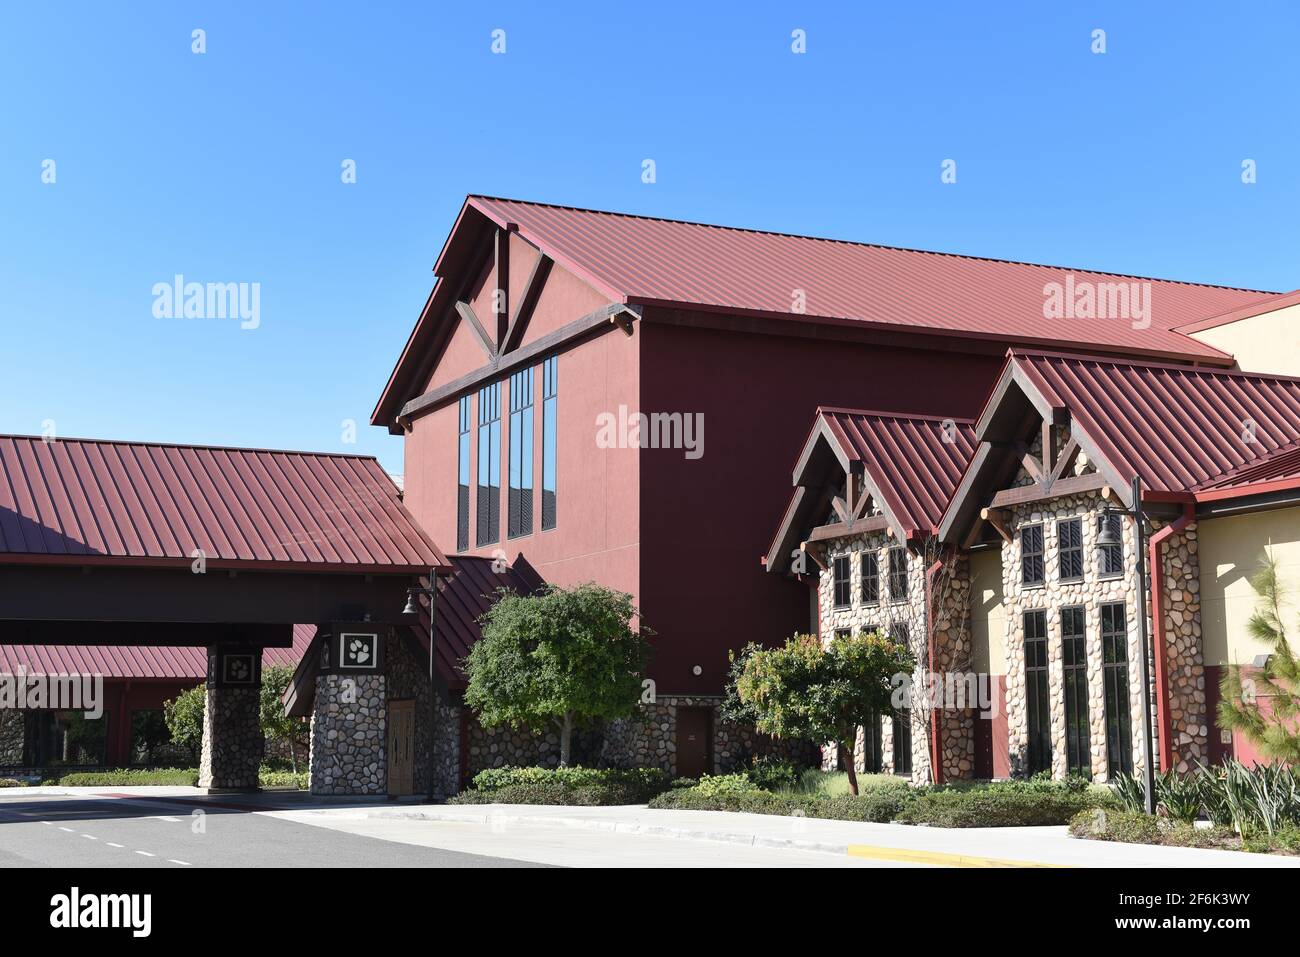 GARDEN GROVE, KALIFORNIEN - 31 MAR 2021: Die Great Wolf Lodge ist ein Indoor-Wasserpark und Resort. Stockfoto